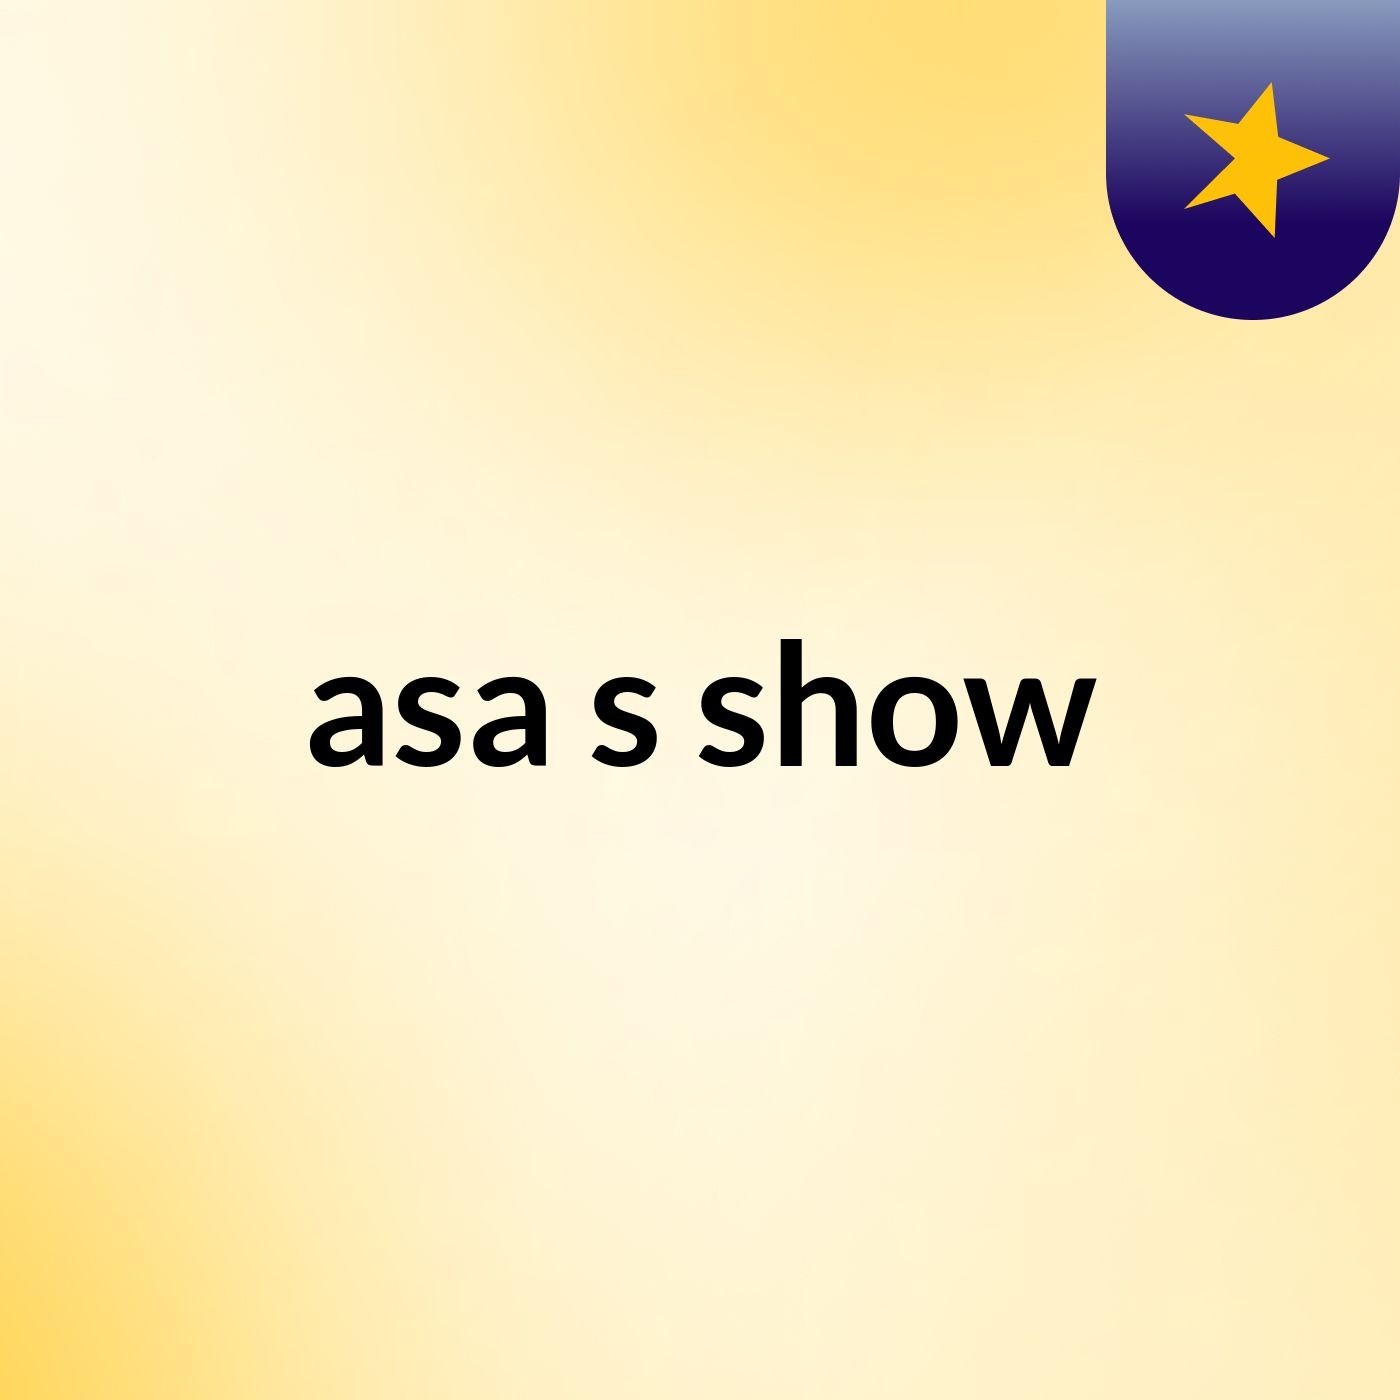 asa's show